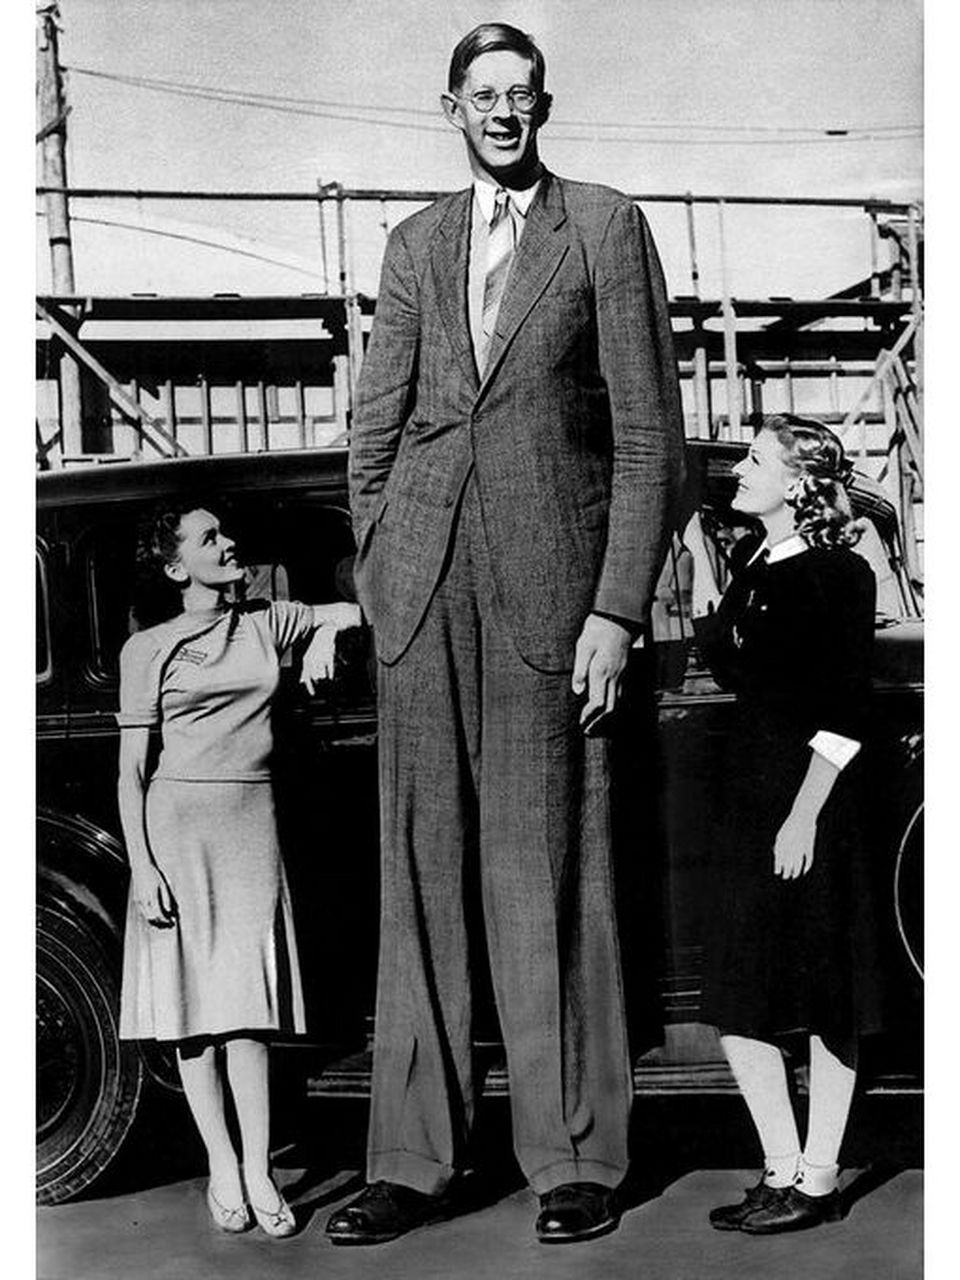 世界上最高的人—瓦德罗,高达2米72,重达222公斤,加之性情温和,故得